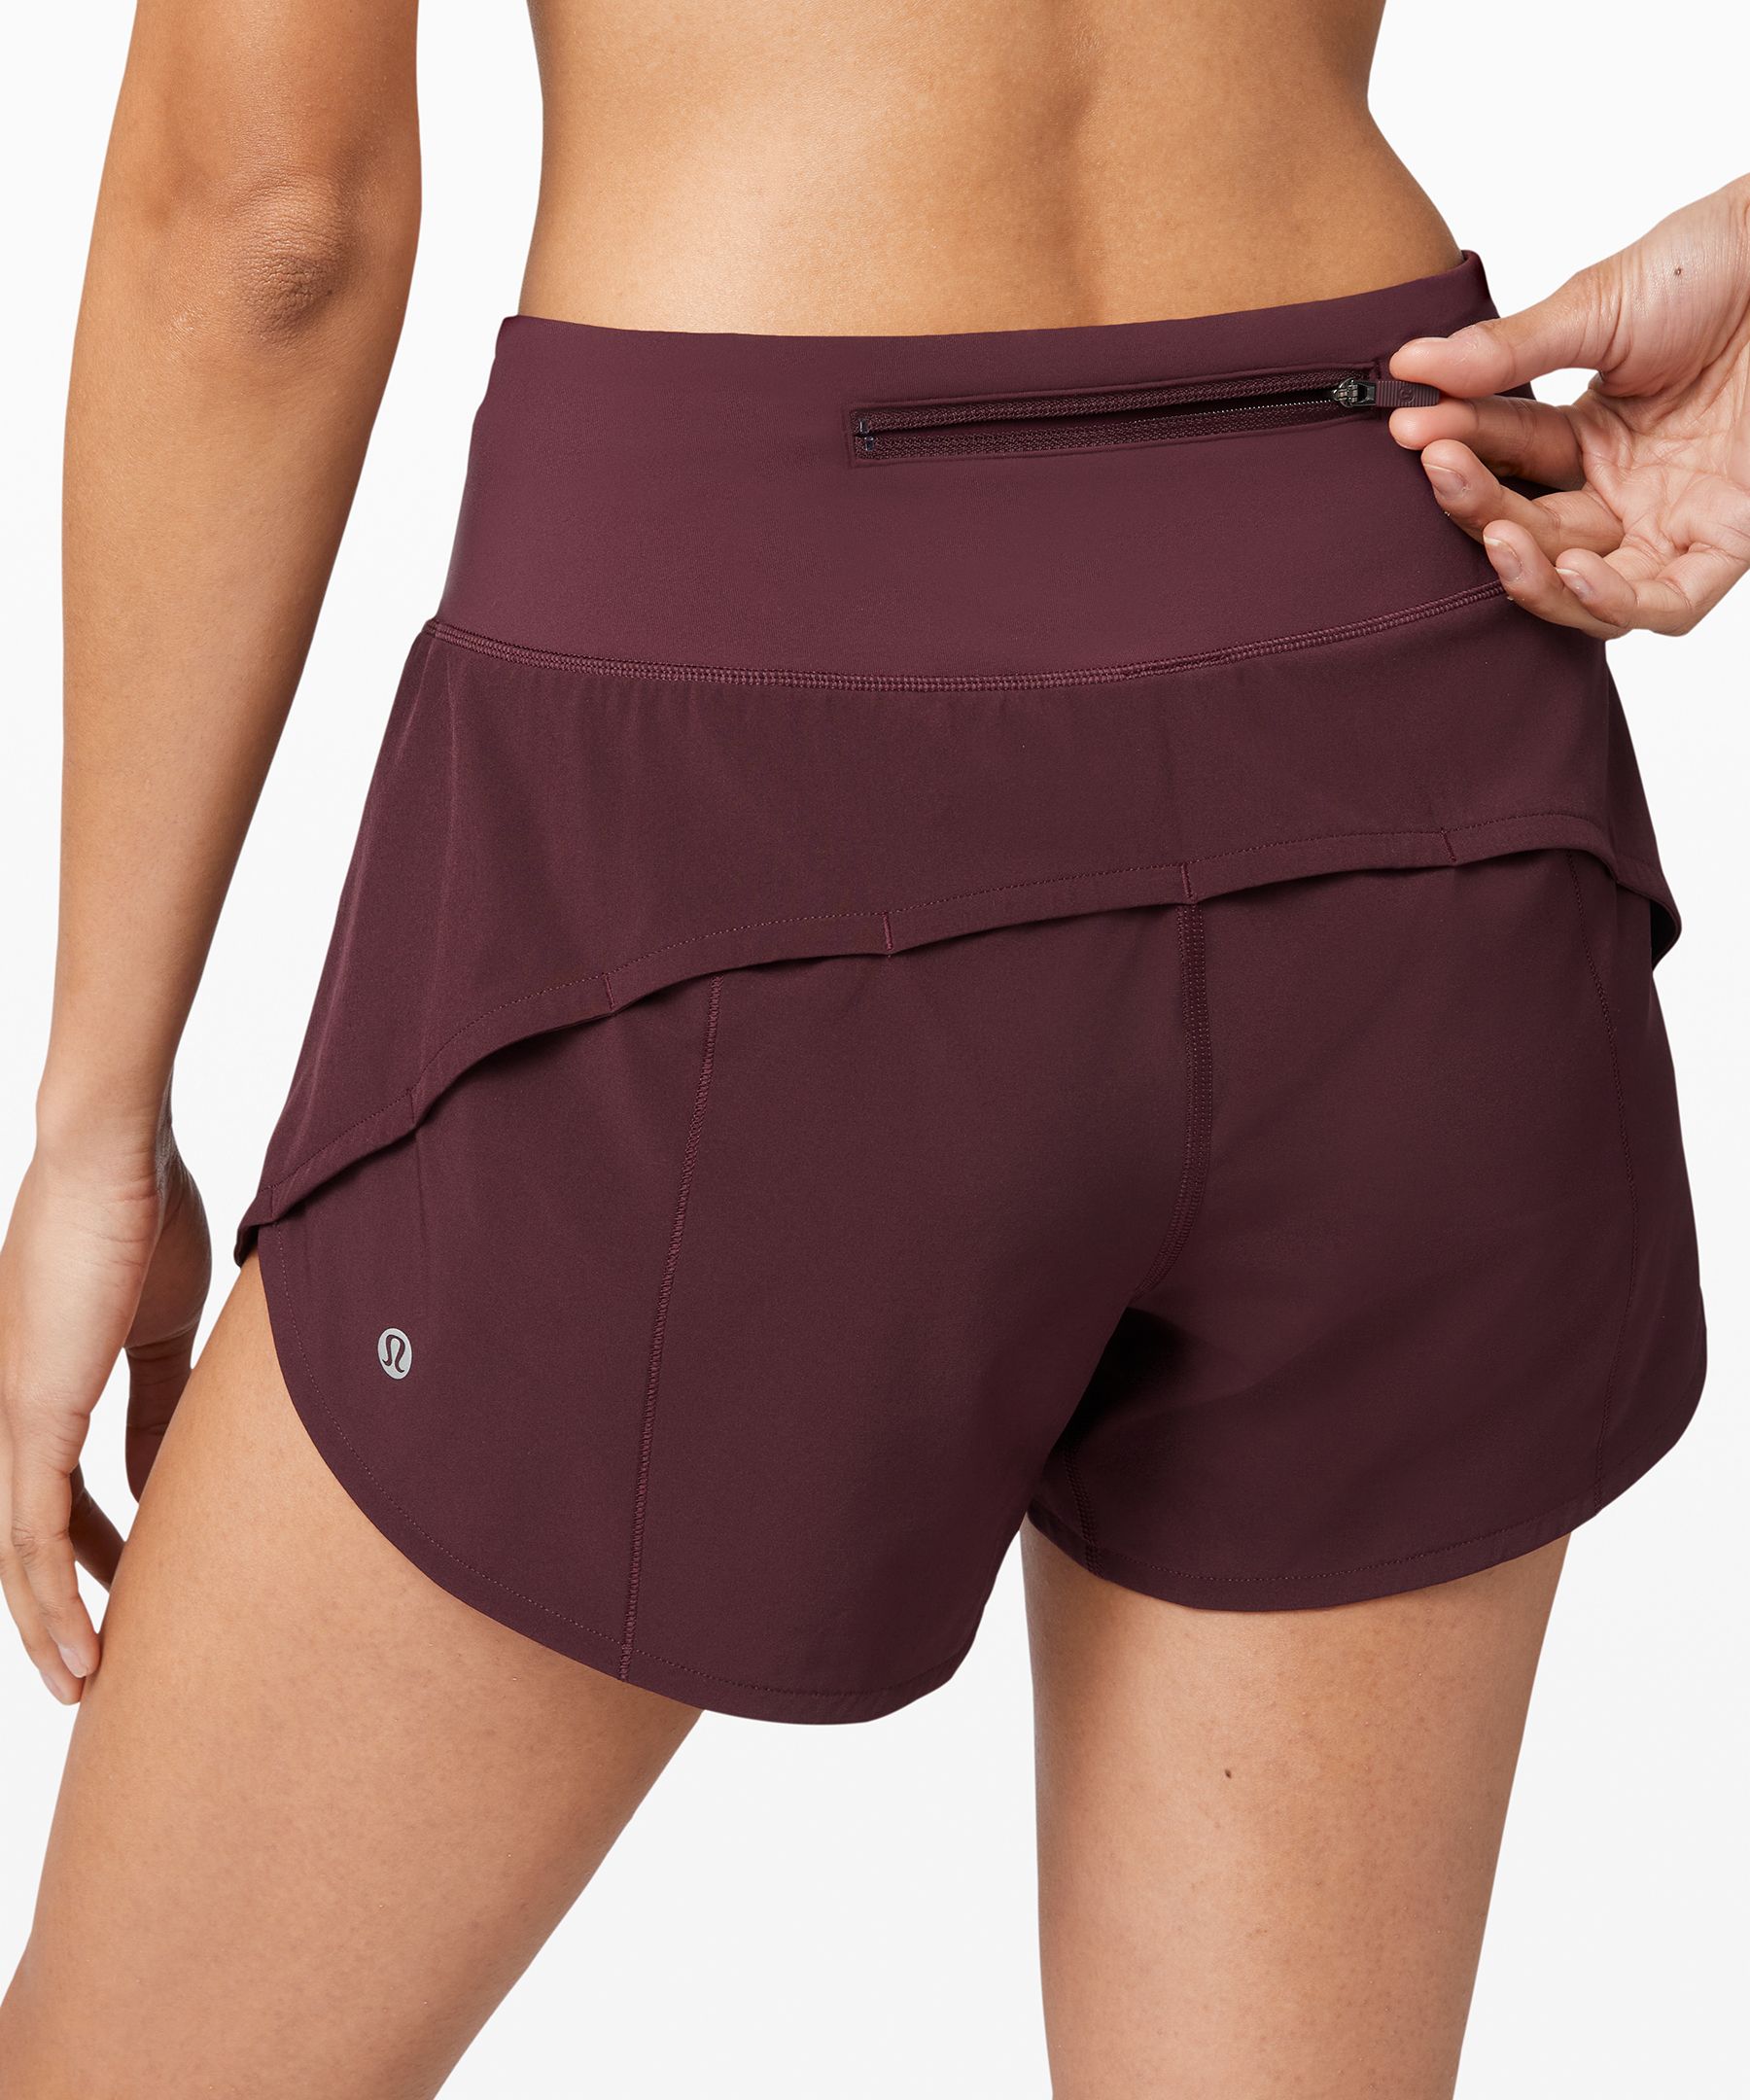 discount lululemon shorts